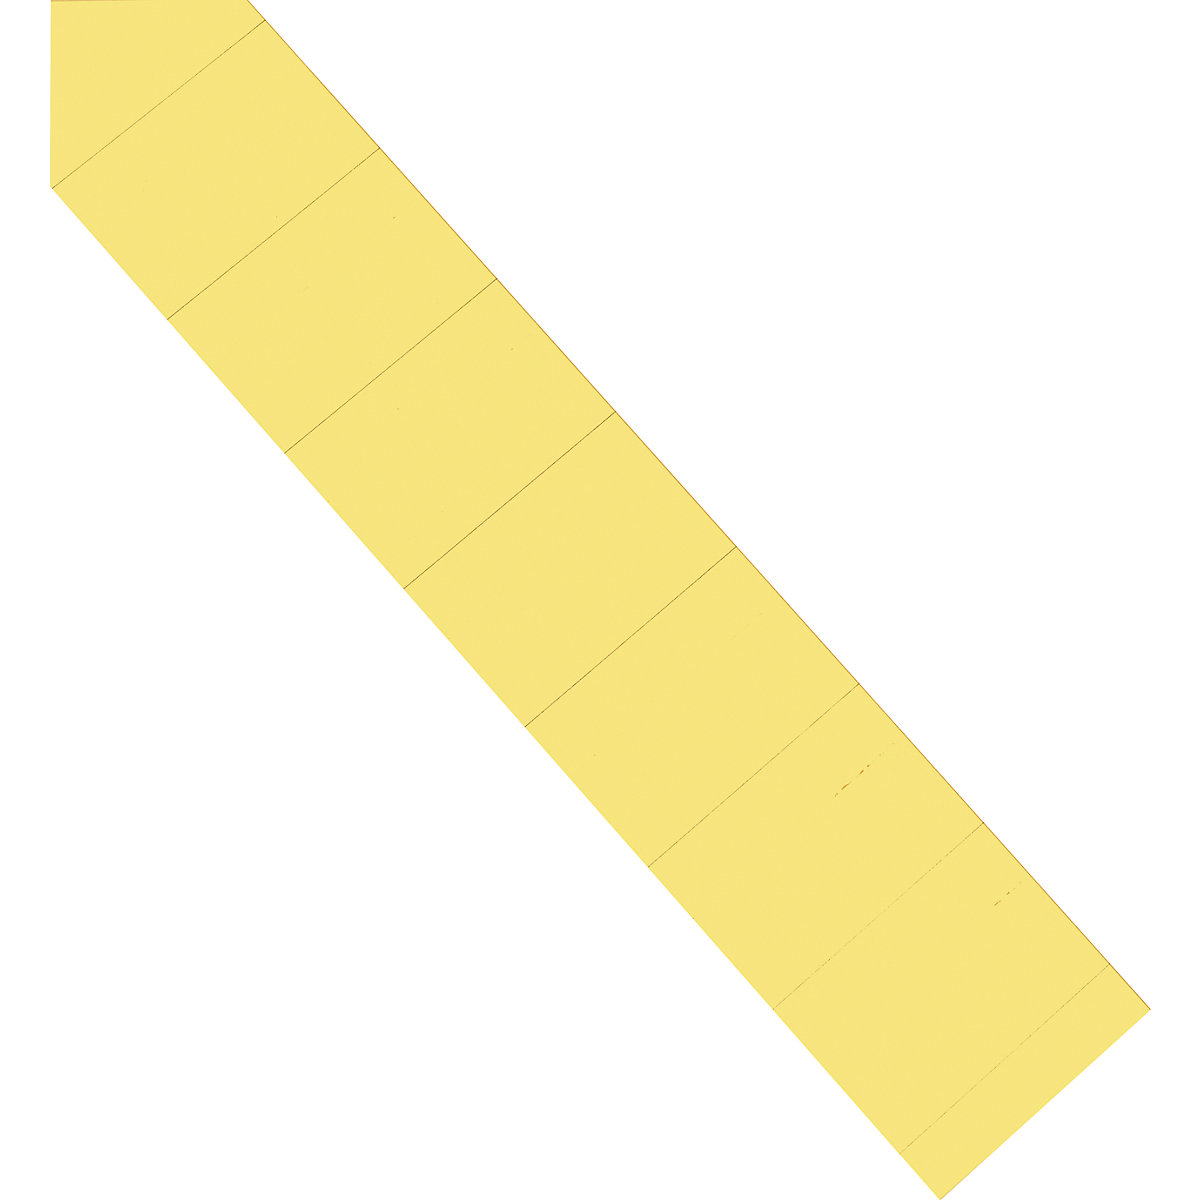 Einsteckkarten magnetoplan, 60 mm, VE 630 Stk, gelb-7